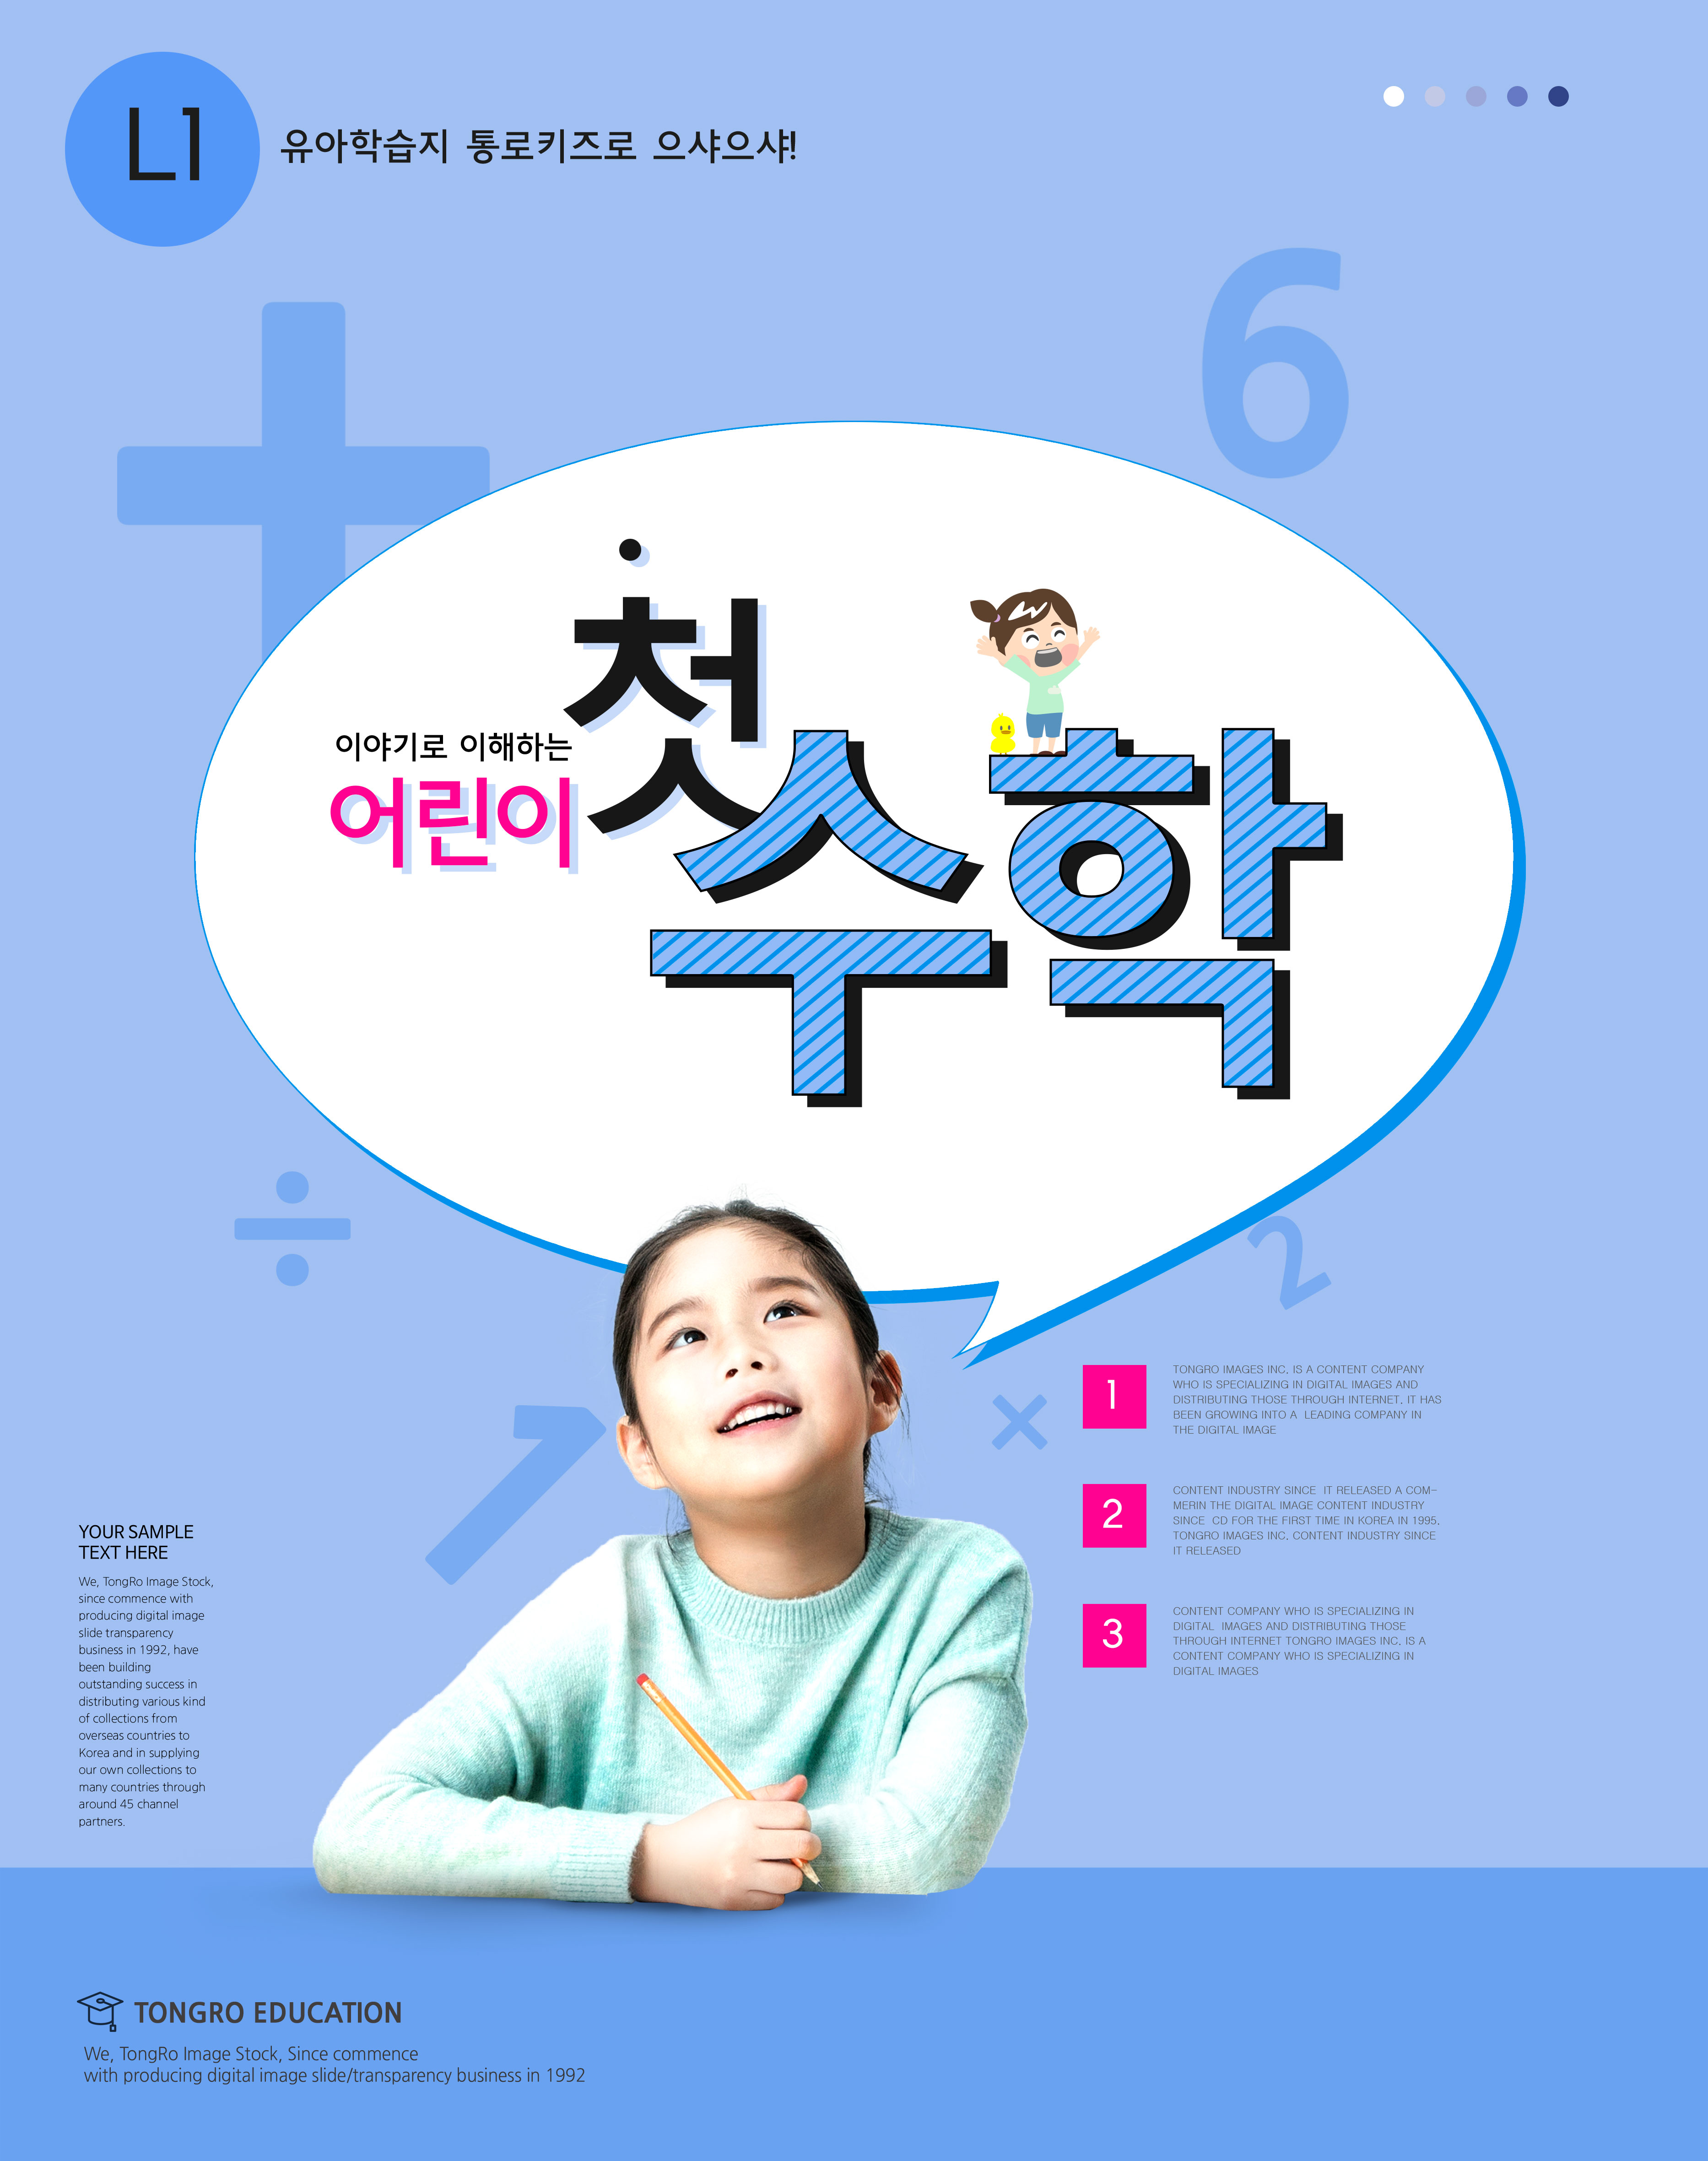 儿童教育学习主题海报设计模板合辑[PSD]插图(6)